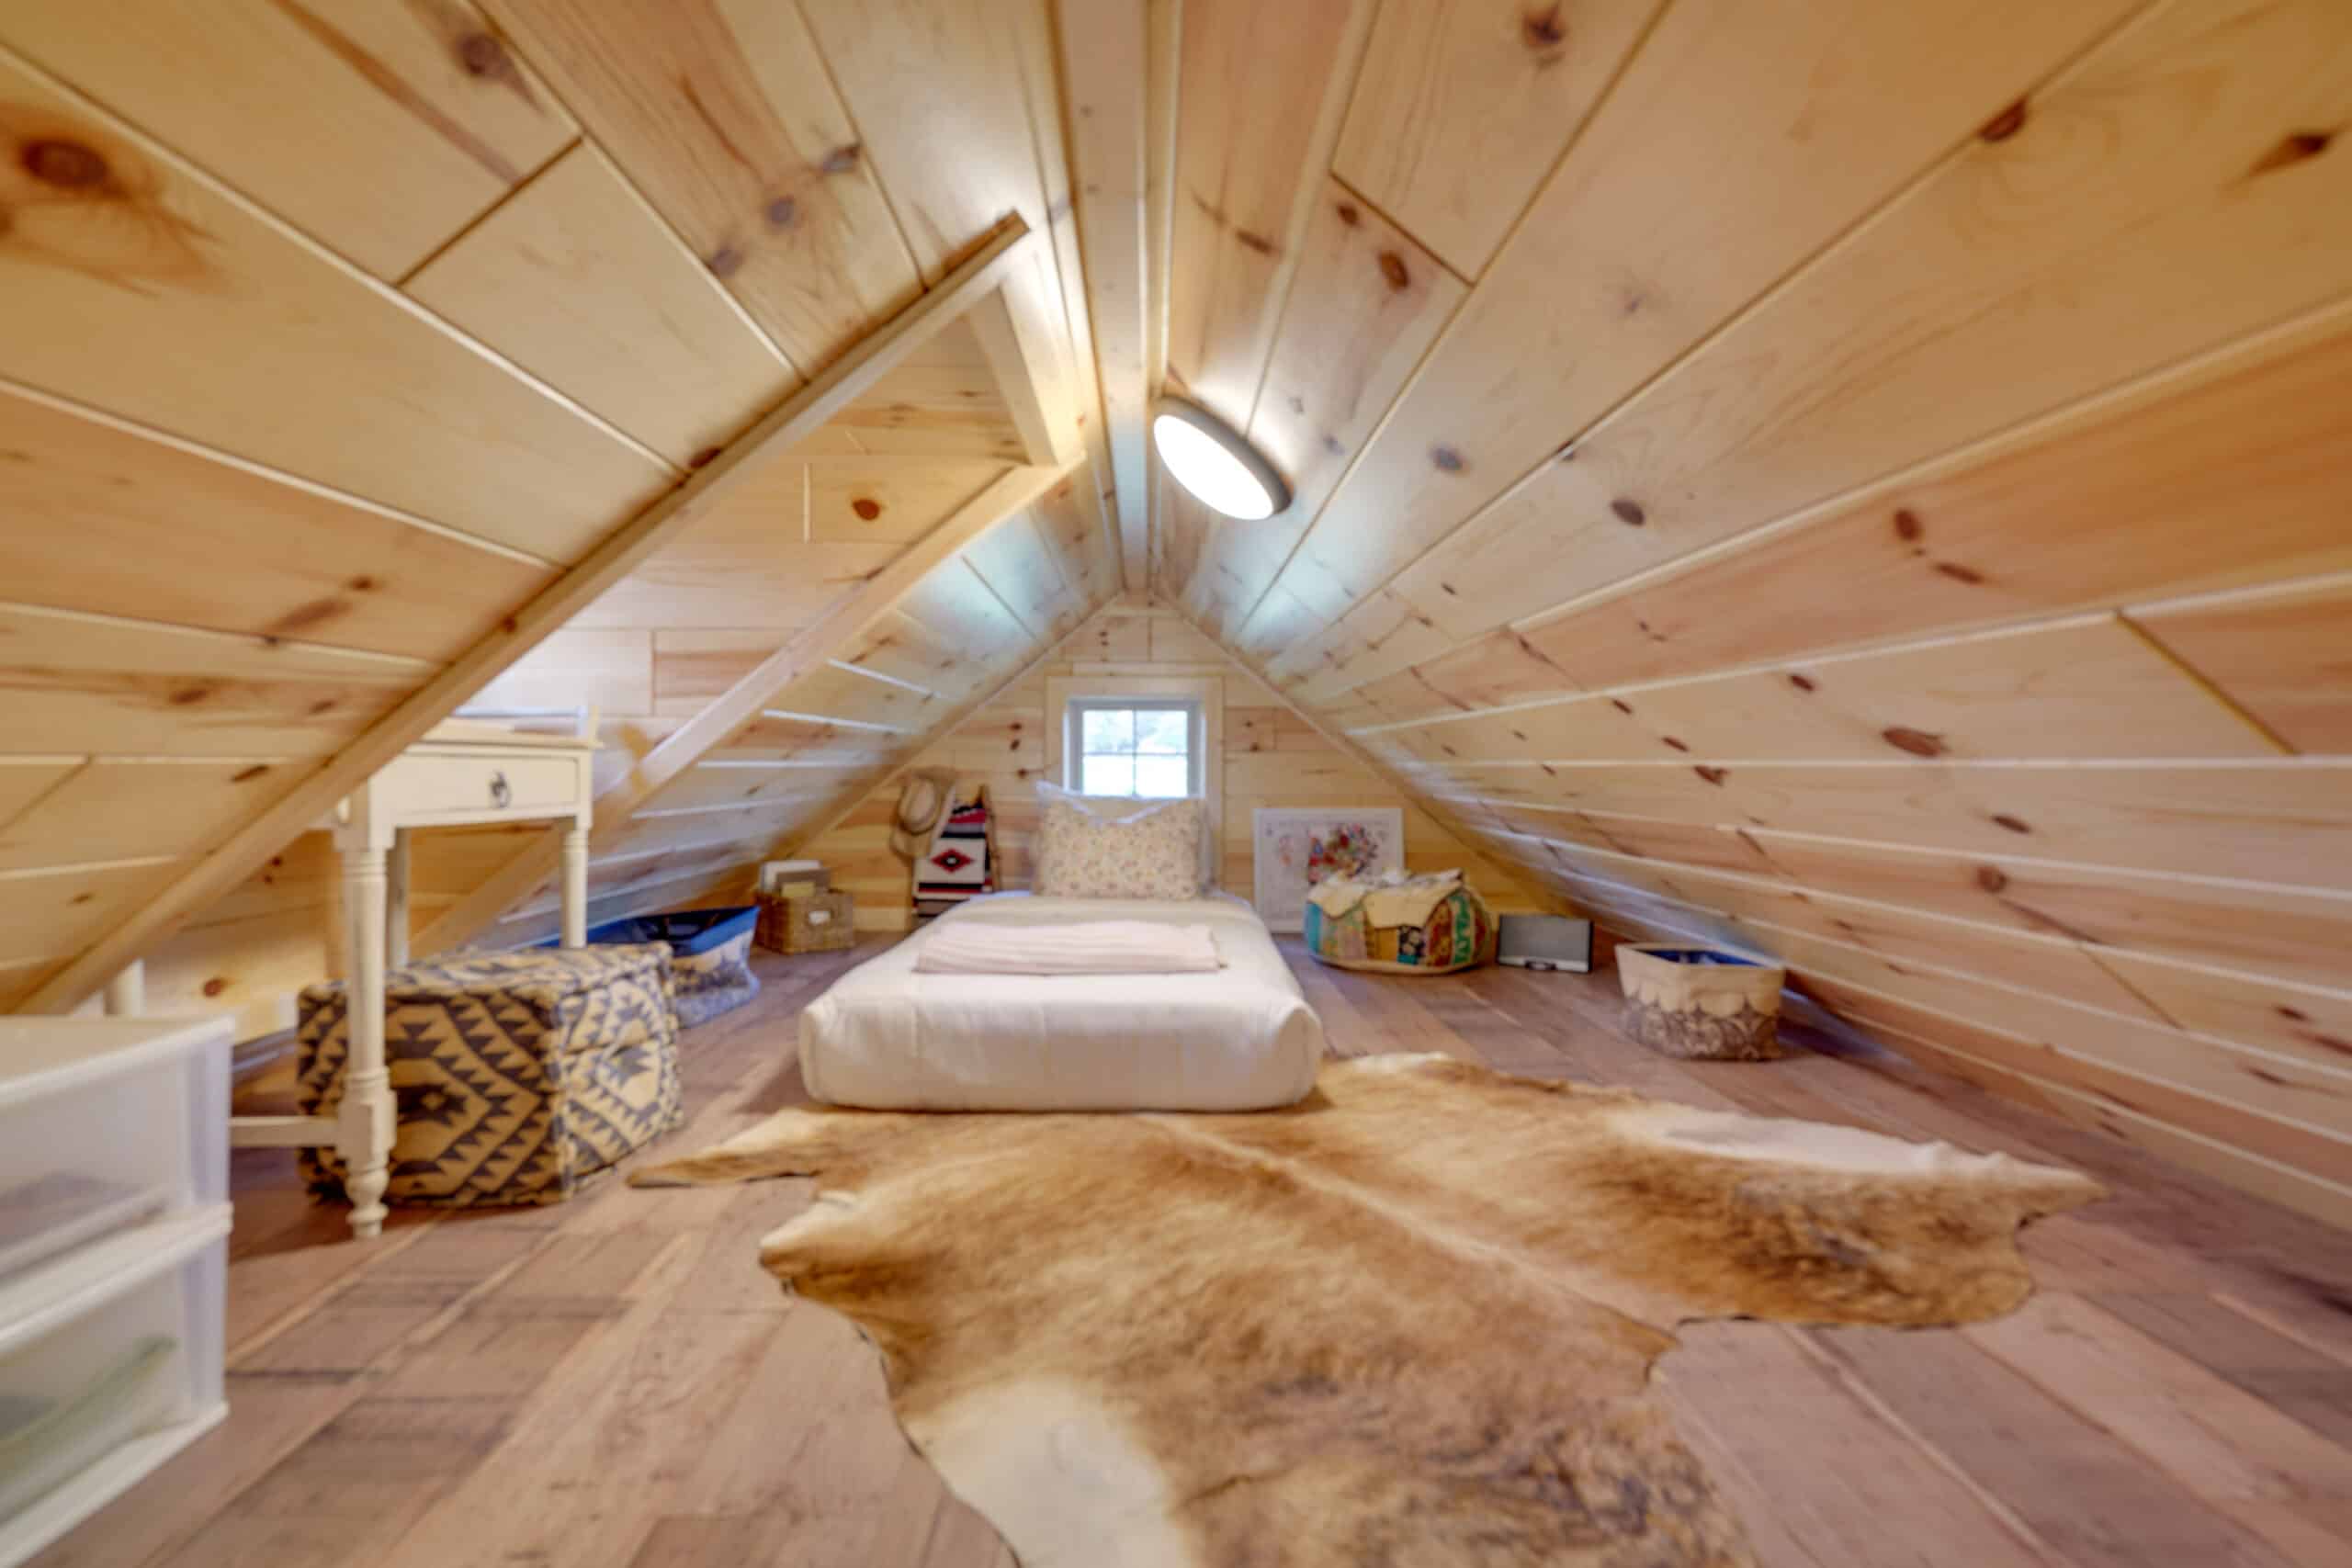 BEST Cabin Decor Ideas for Rustic, Mountain & Lodge Cabin Decor